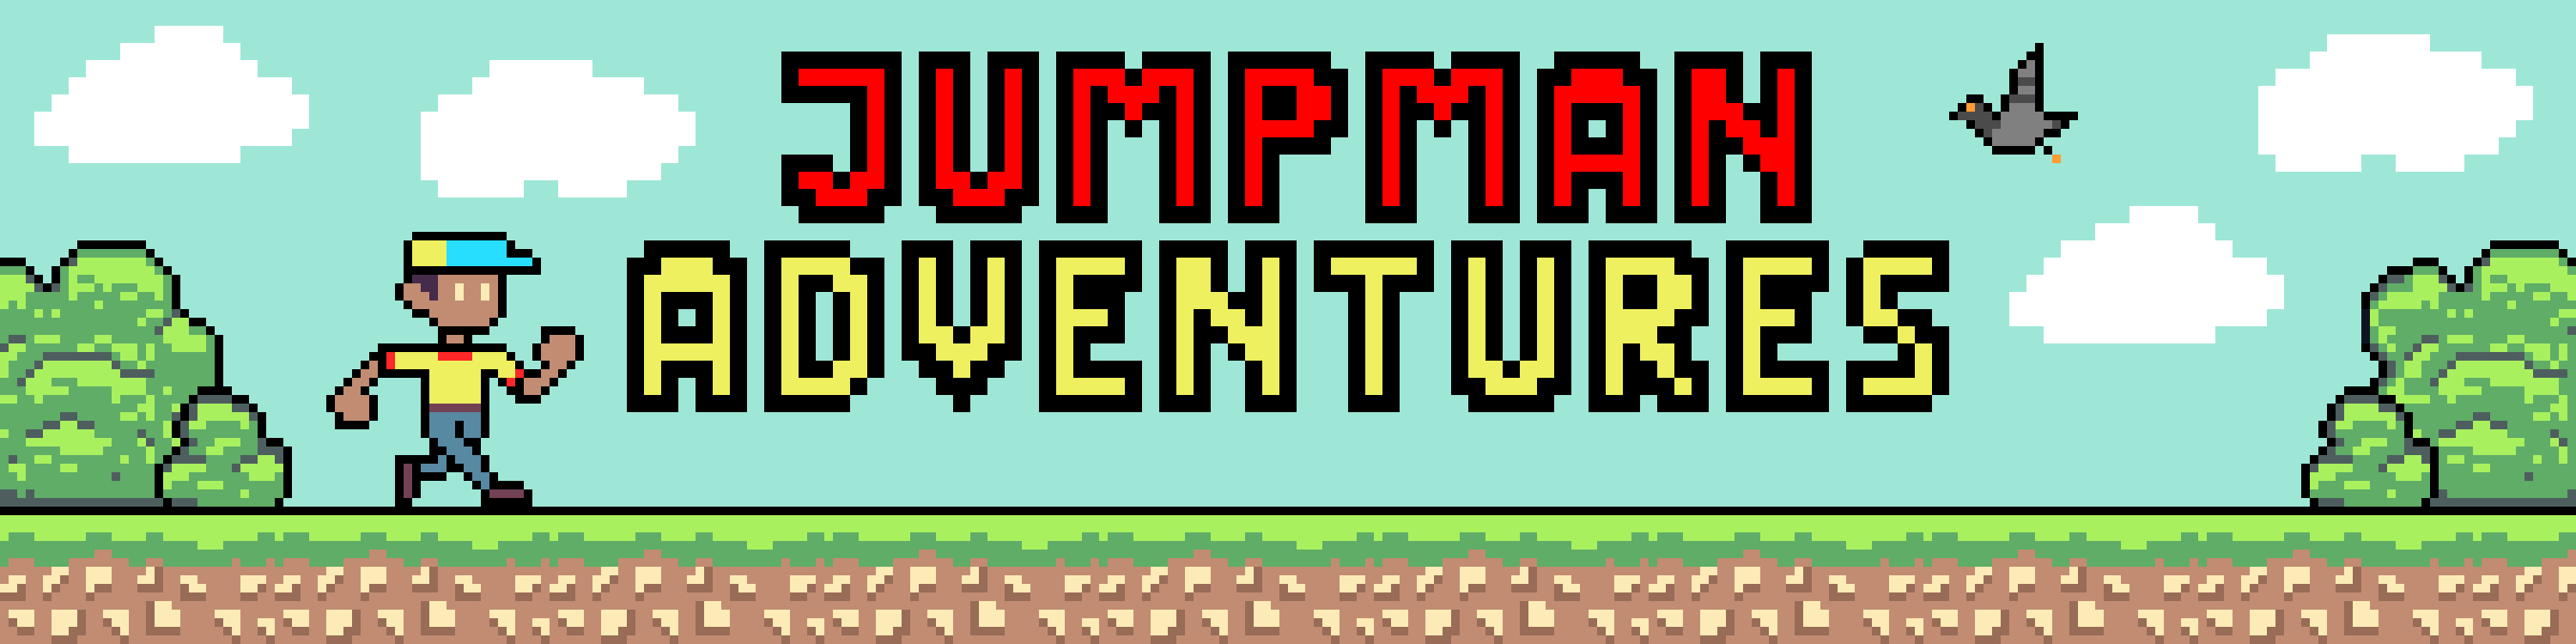 Jumpman Adventures